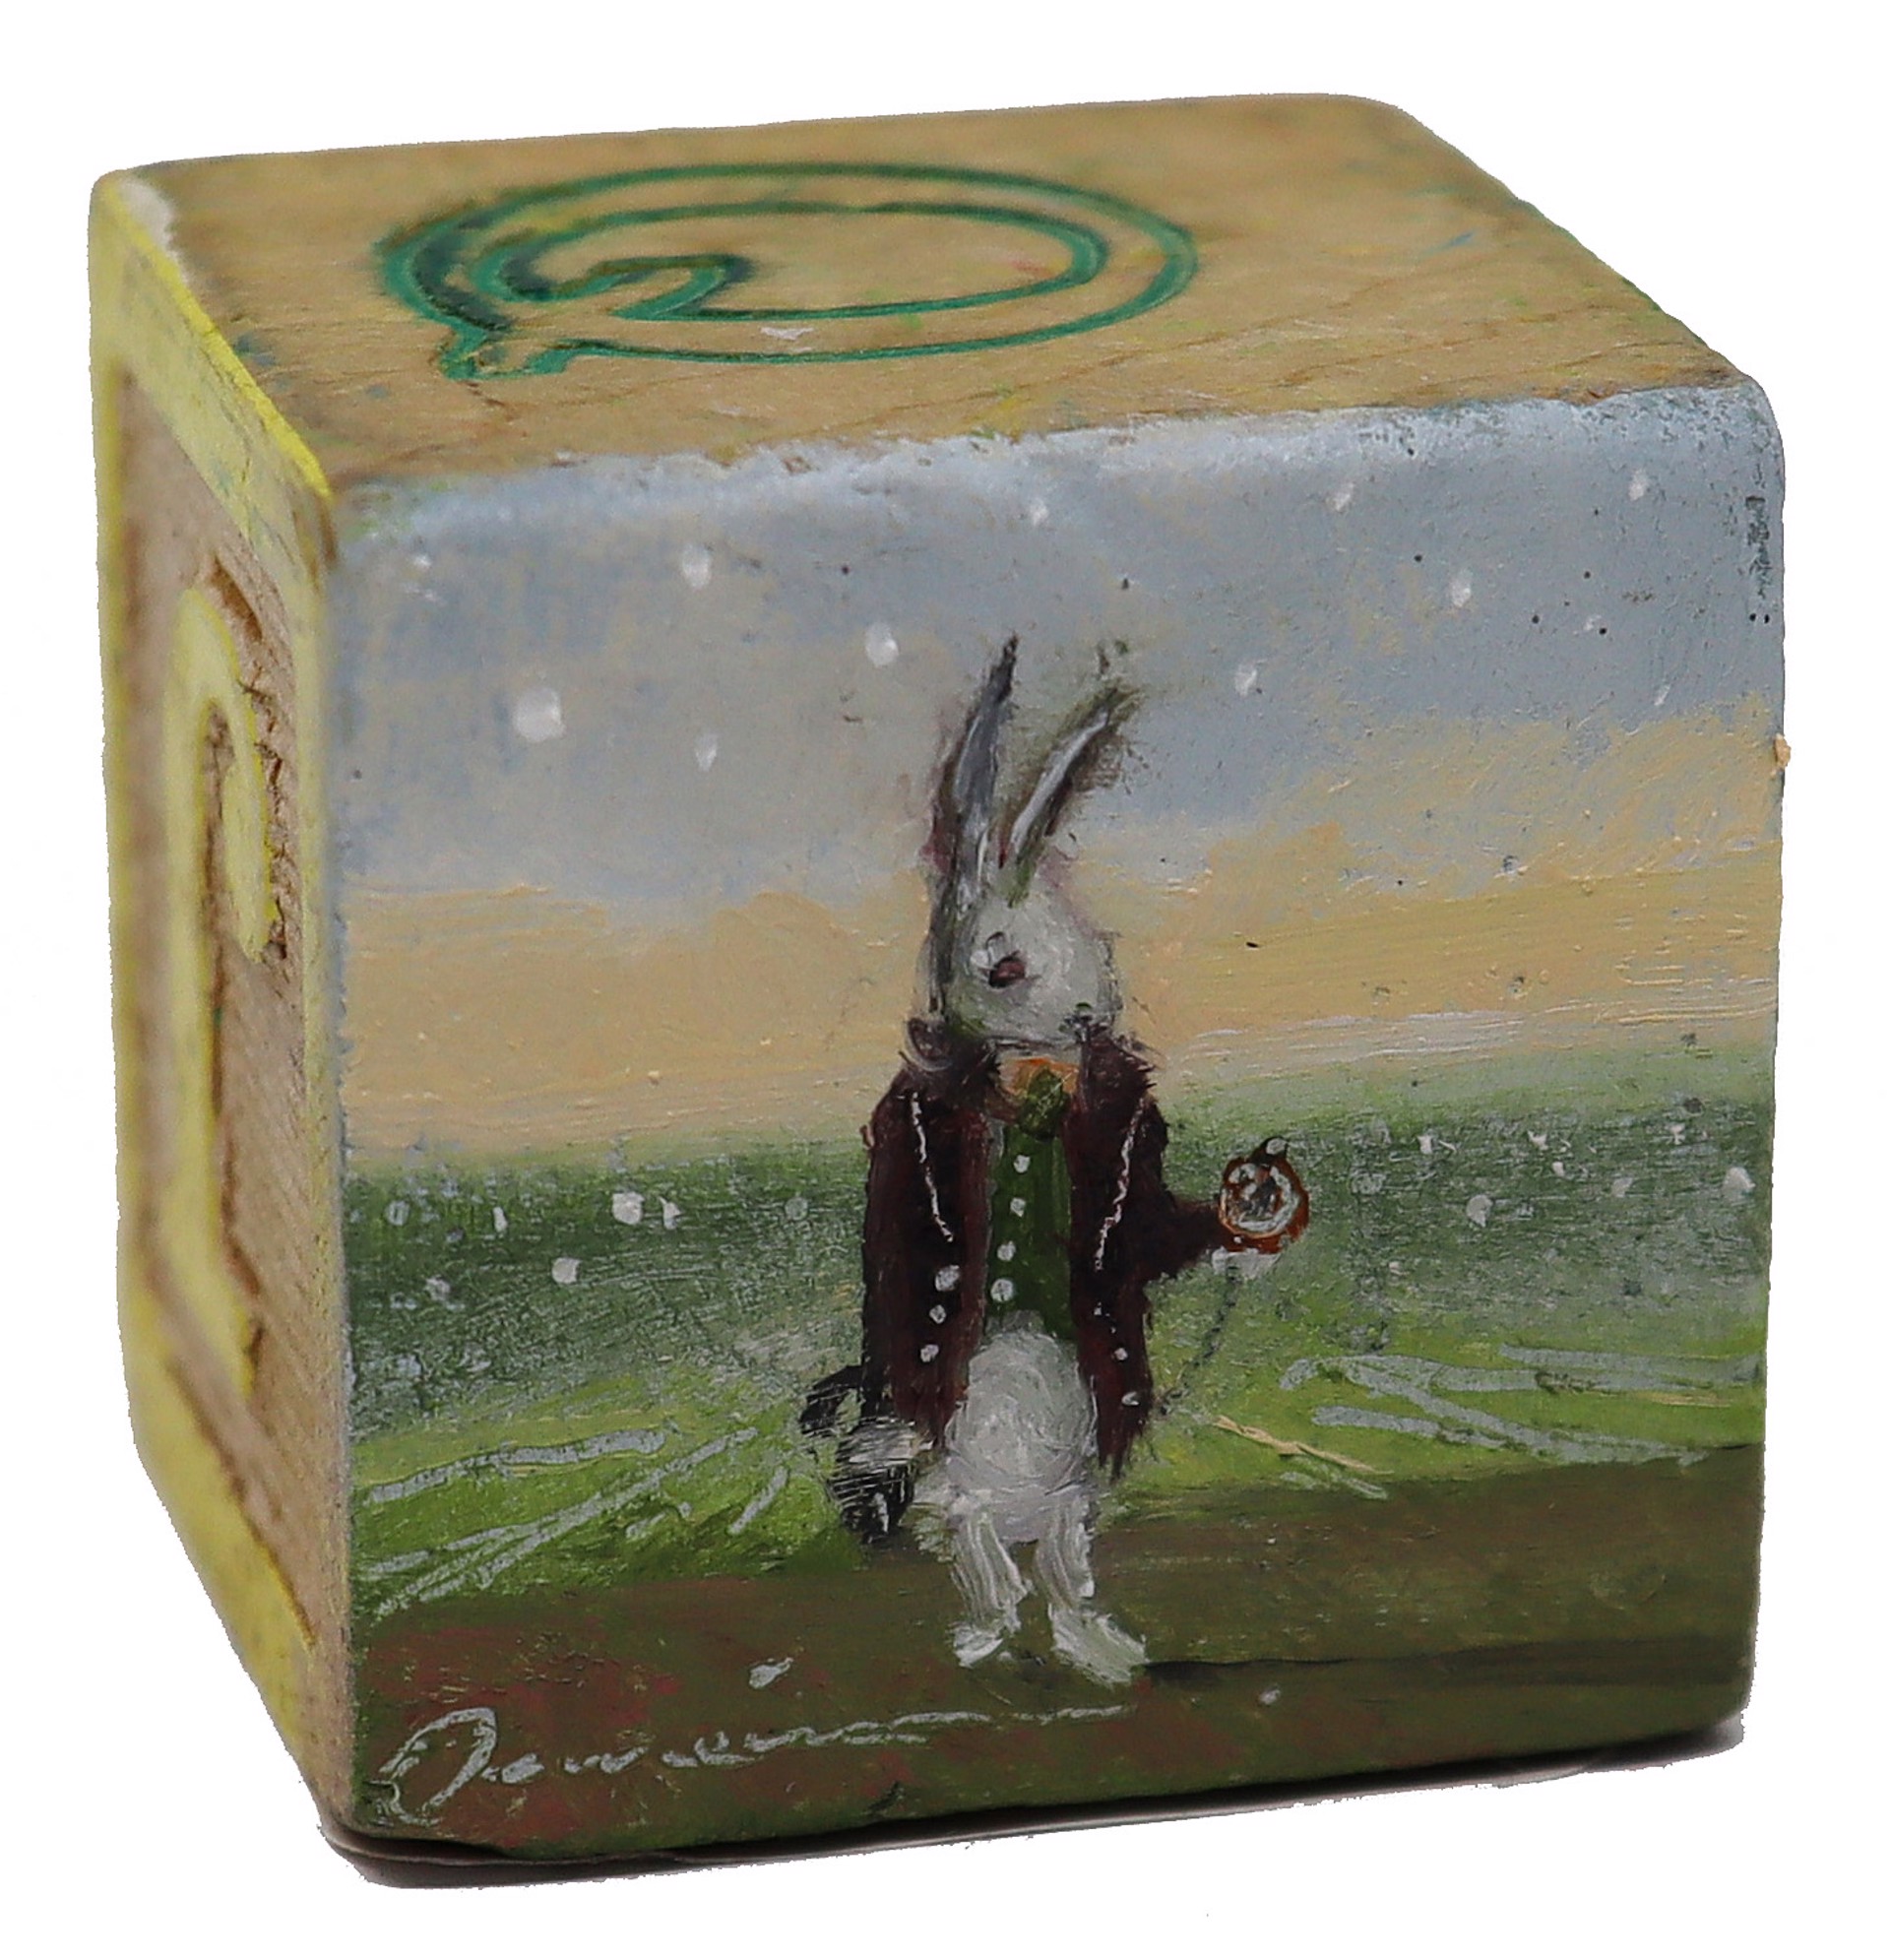 White Rabbit (I'm Late) by Scott E. Hill